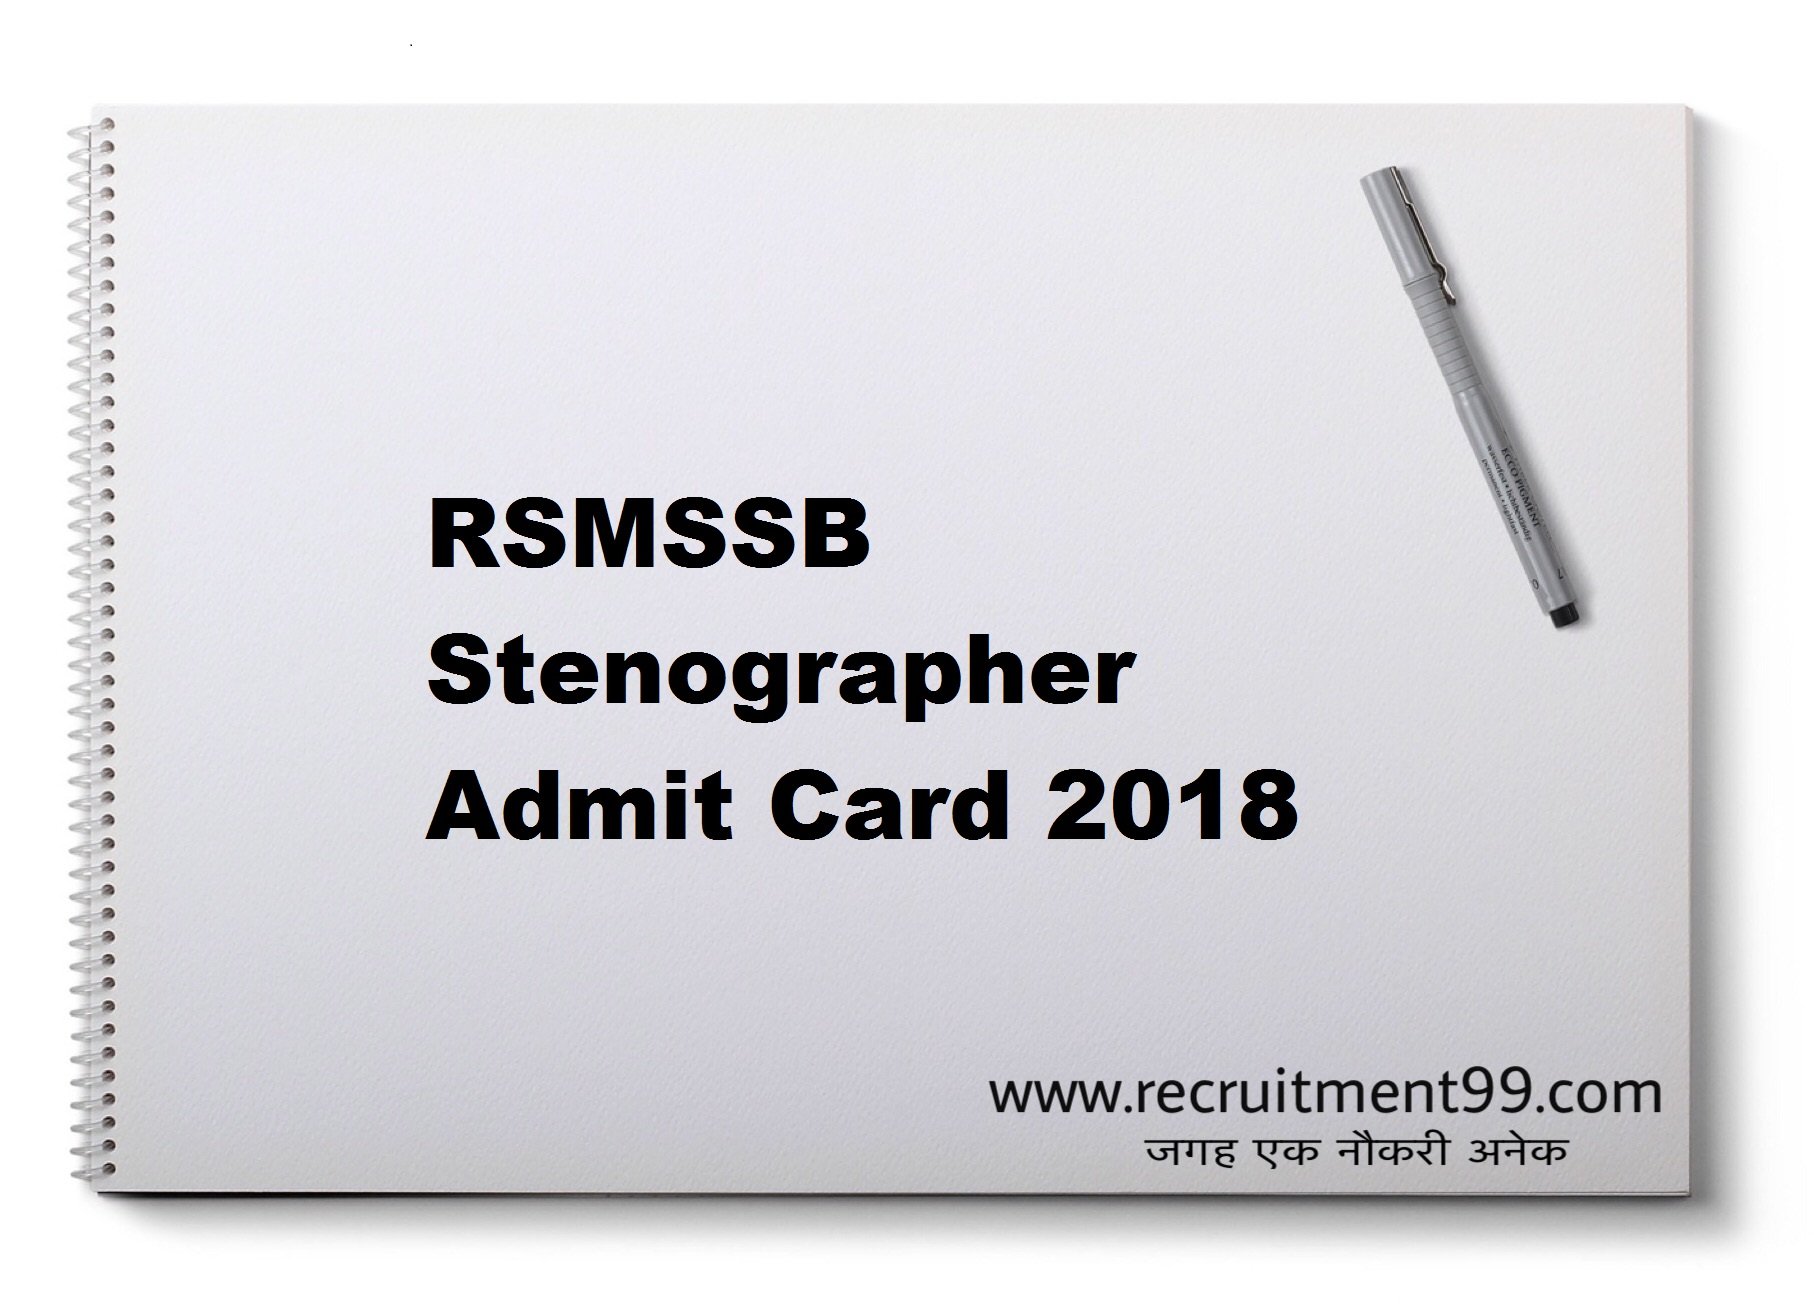 RSMSSB Stenographer Admit Card 2018